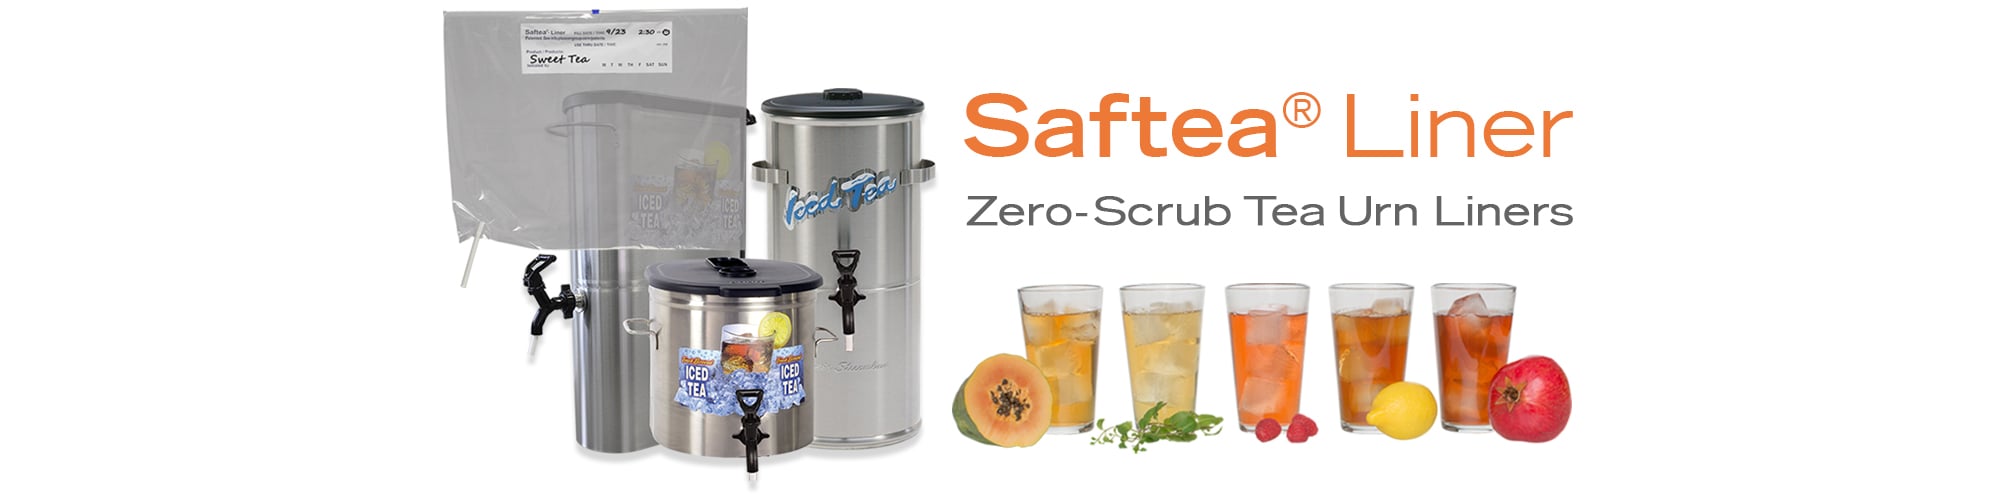 Saftea® Liner Zero Scrub Tea Urn Liners